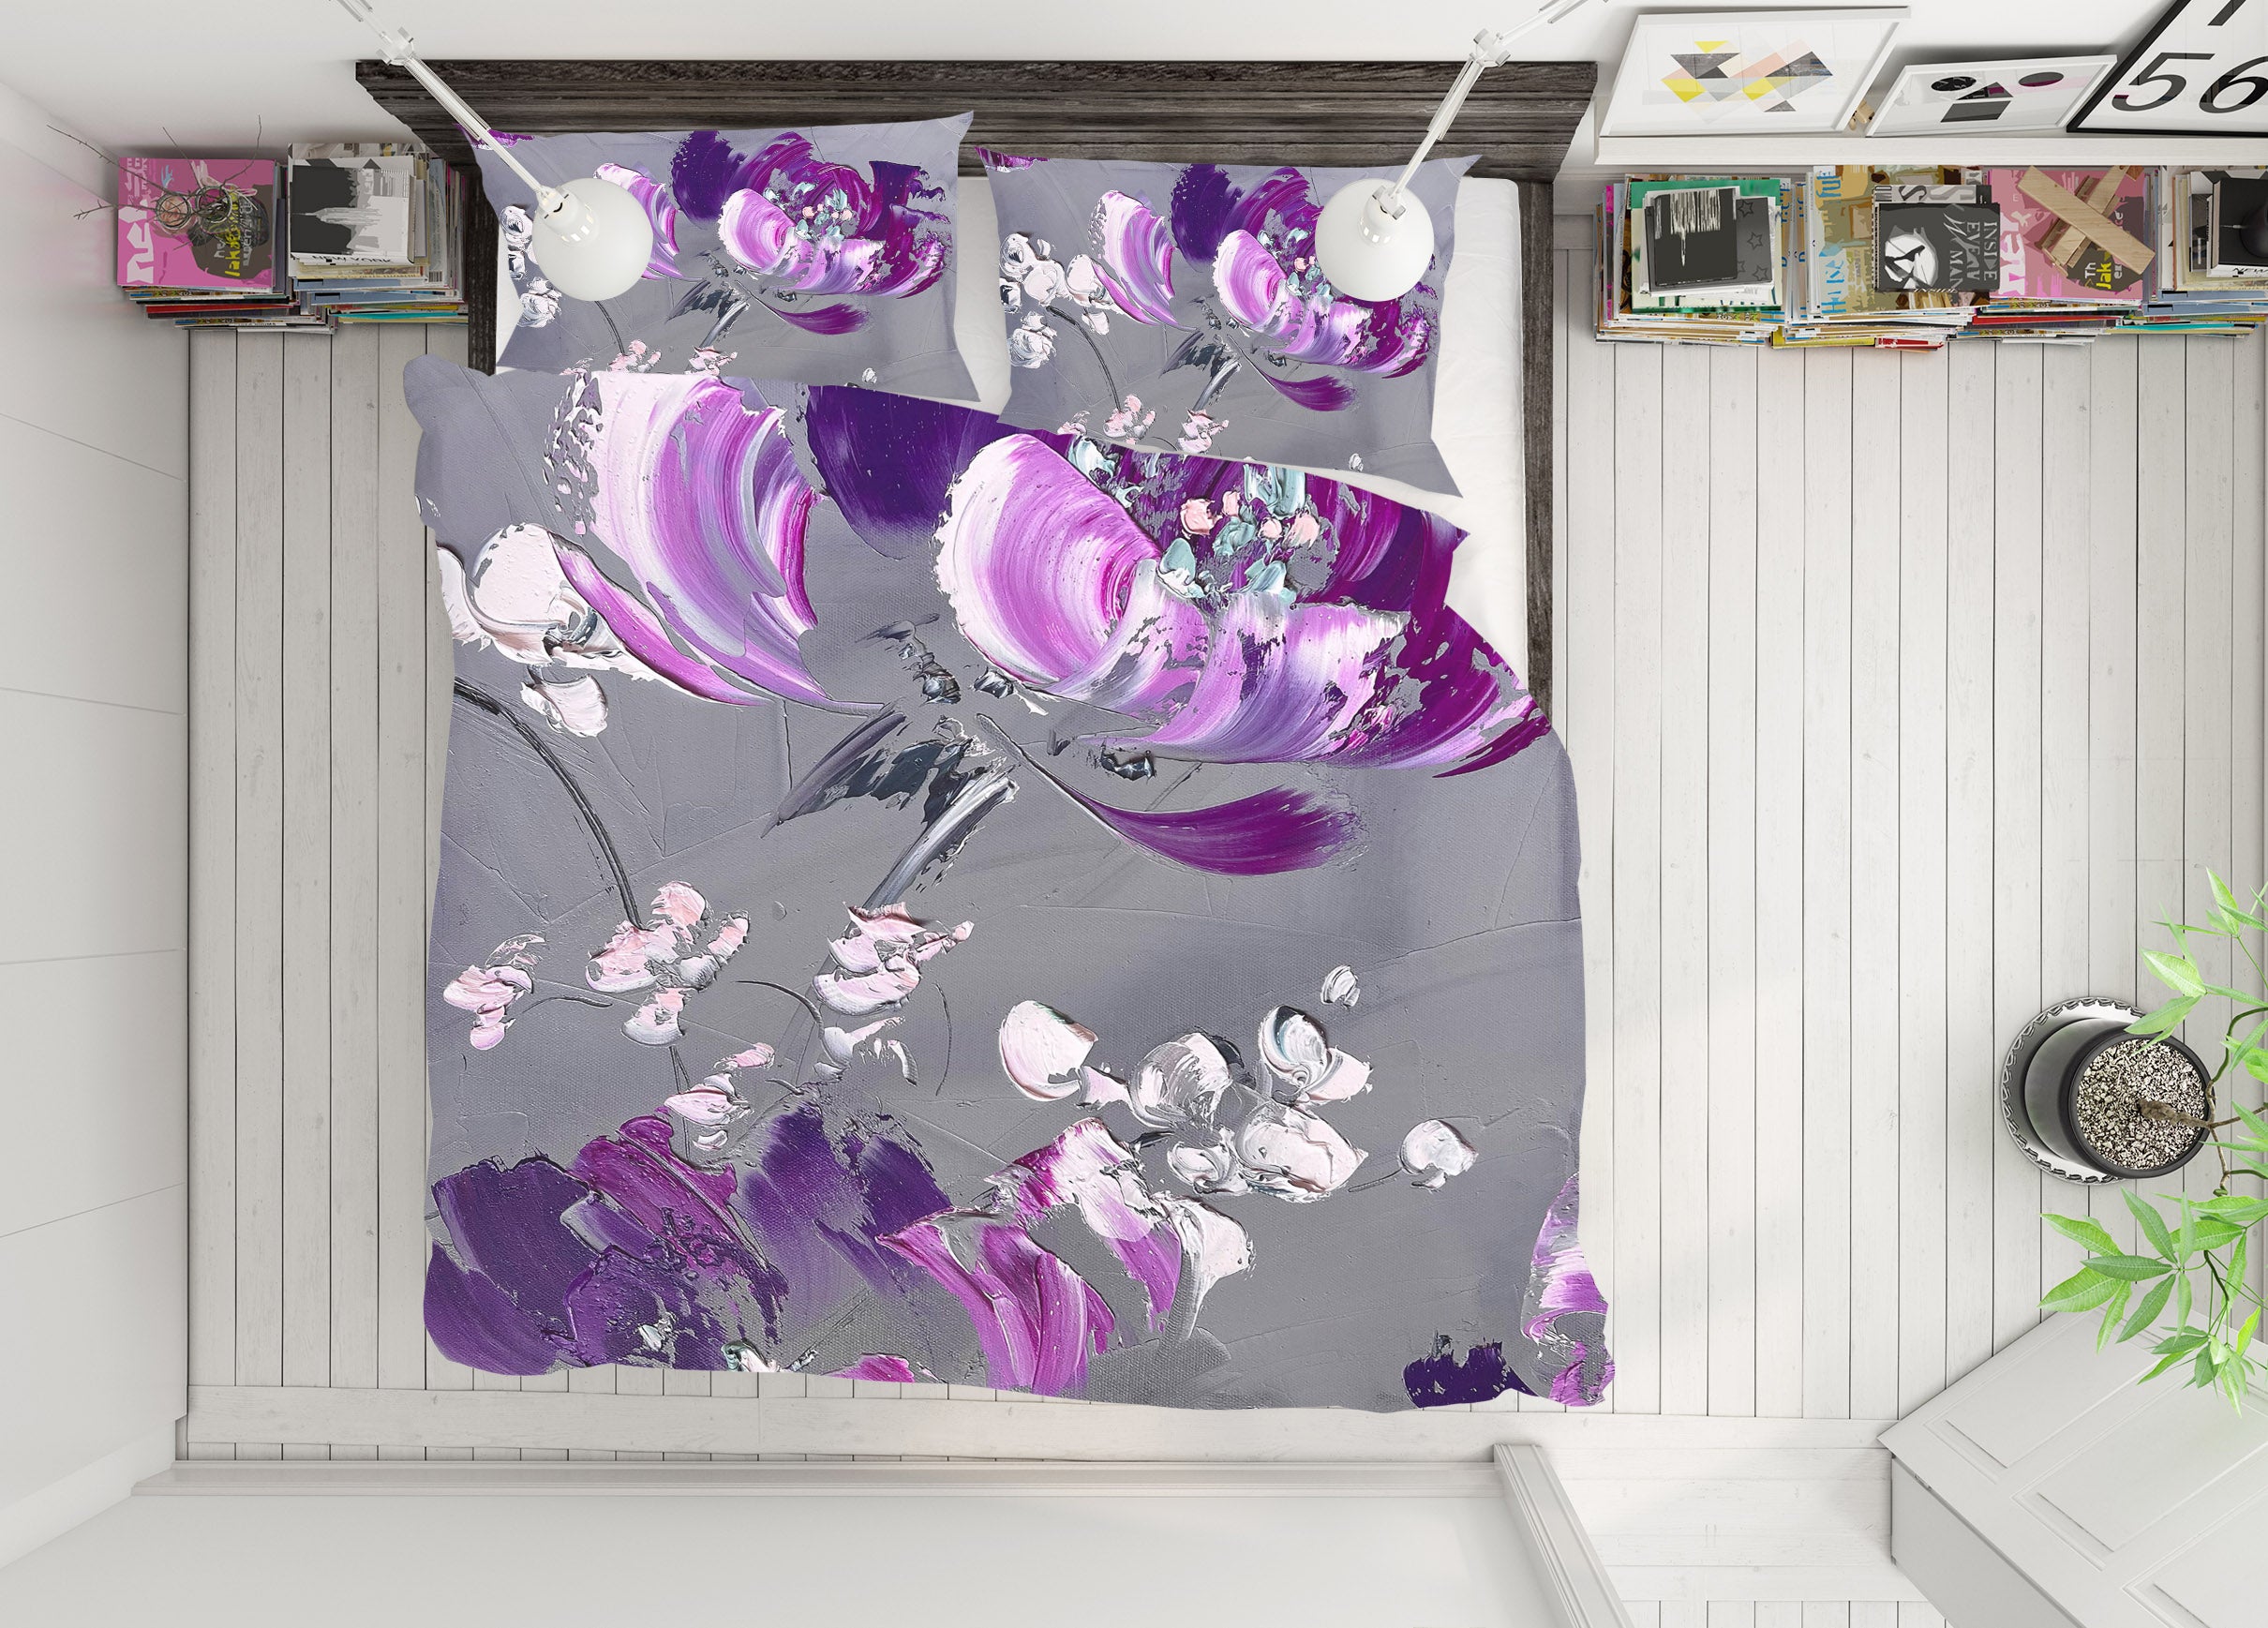 3D Purple Flowers 3797 Skromova Marina Bedding Bed Pillowcases Quilt Cover Duvet Cover